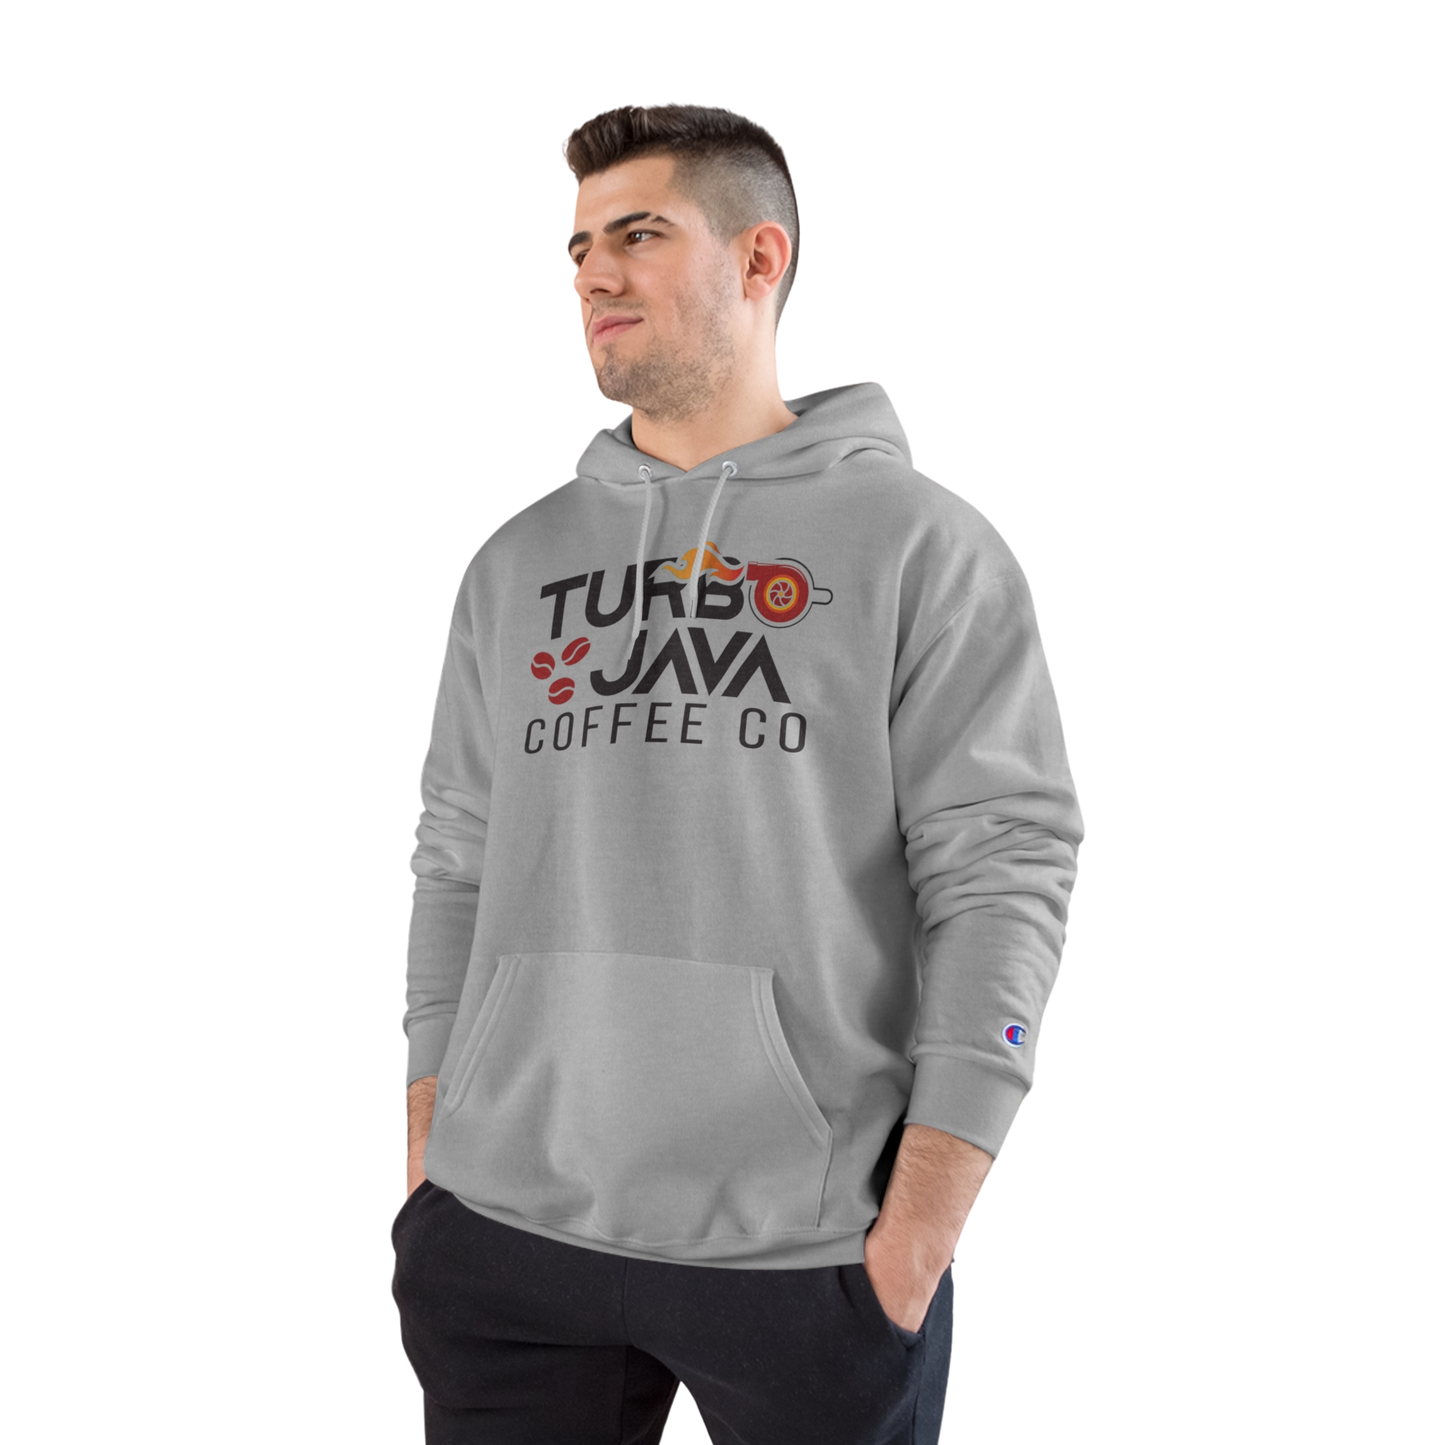 Turbo Java Champion Hoodie